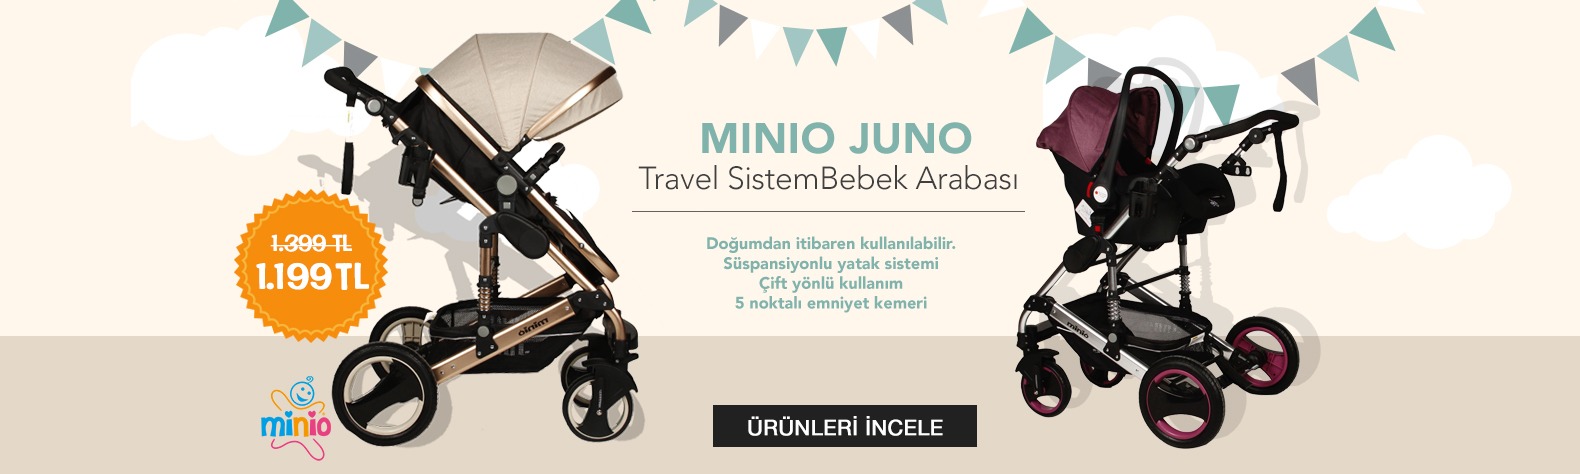 Minio Juno Travel Sistem Bebek Arabası